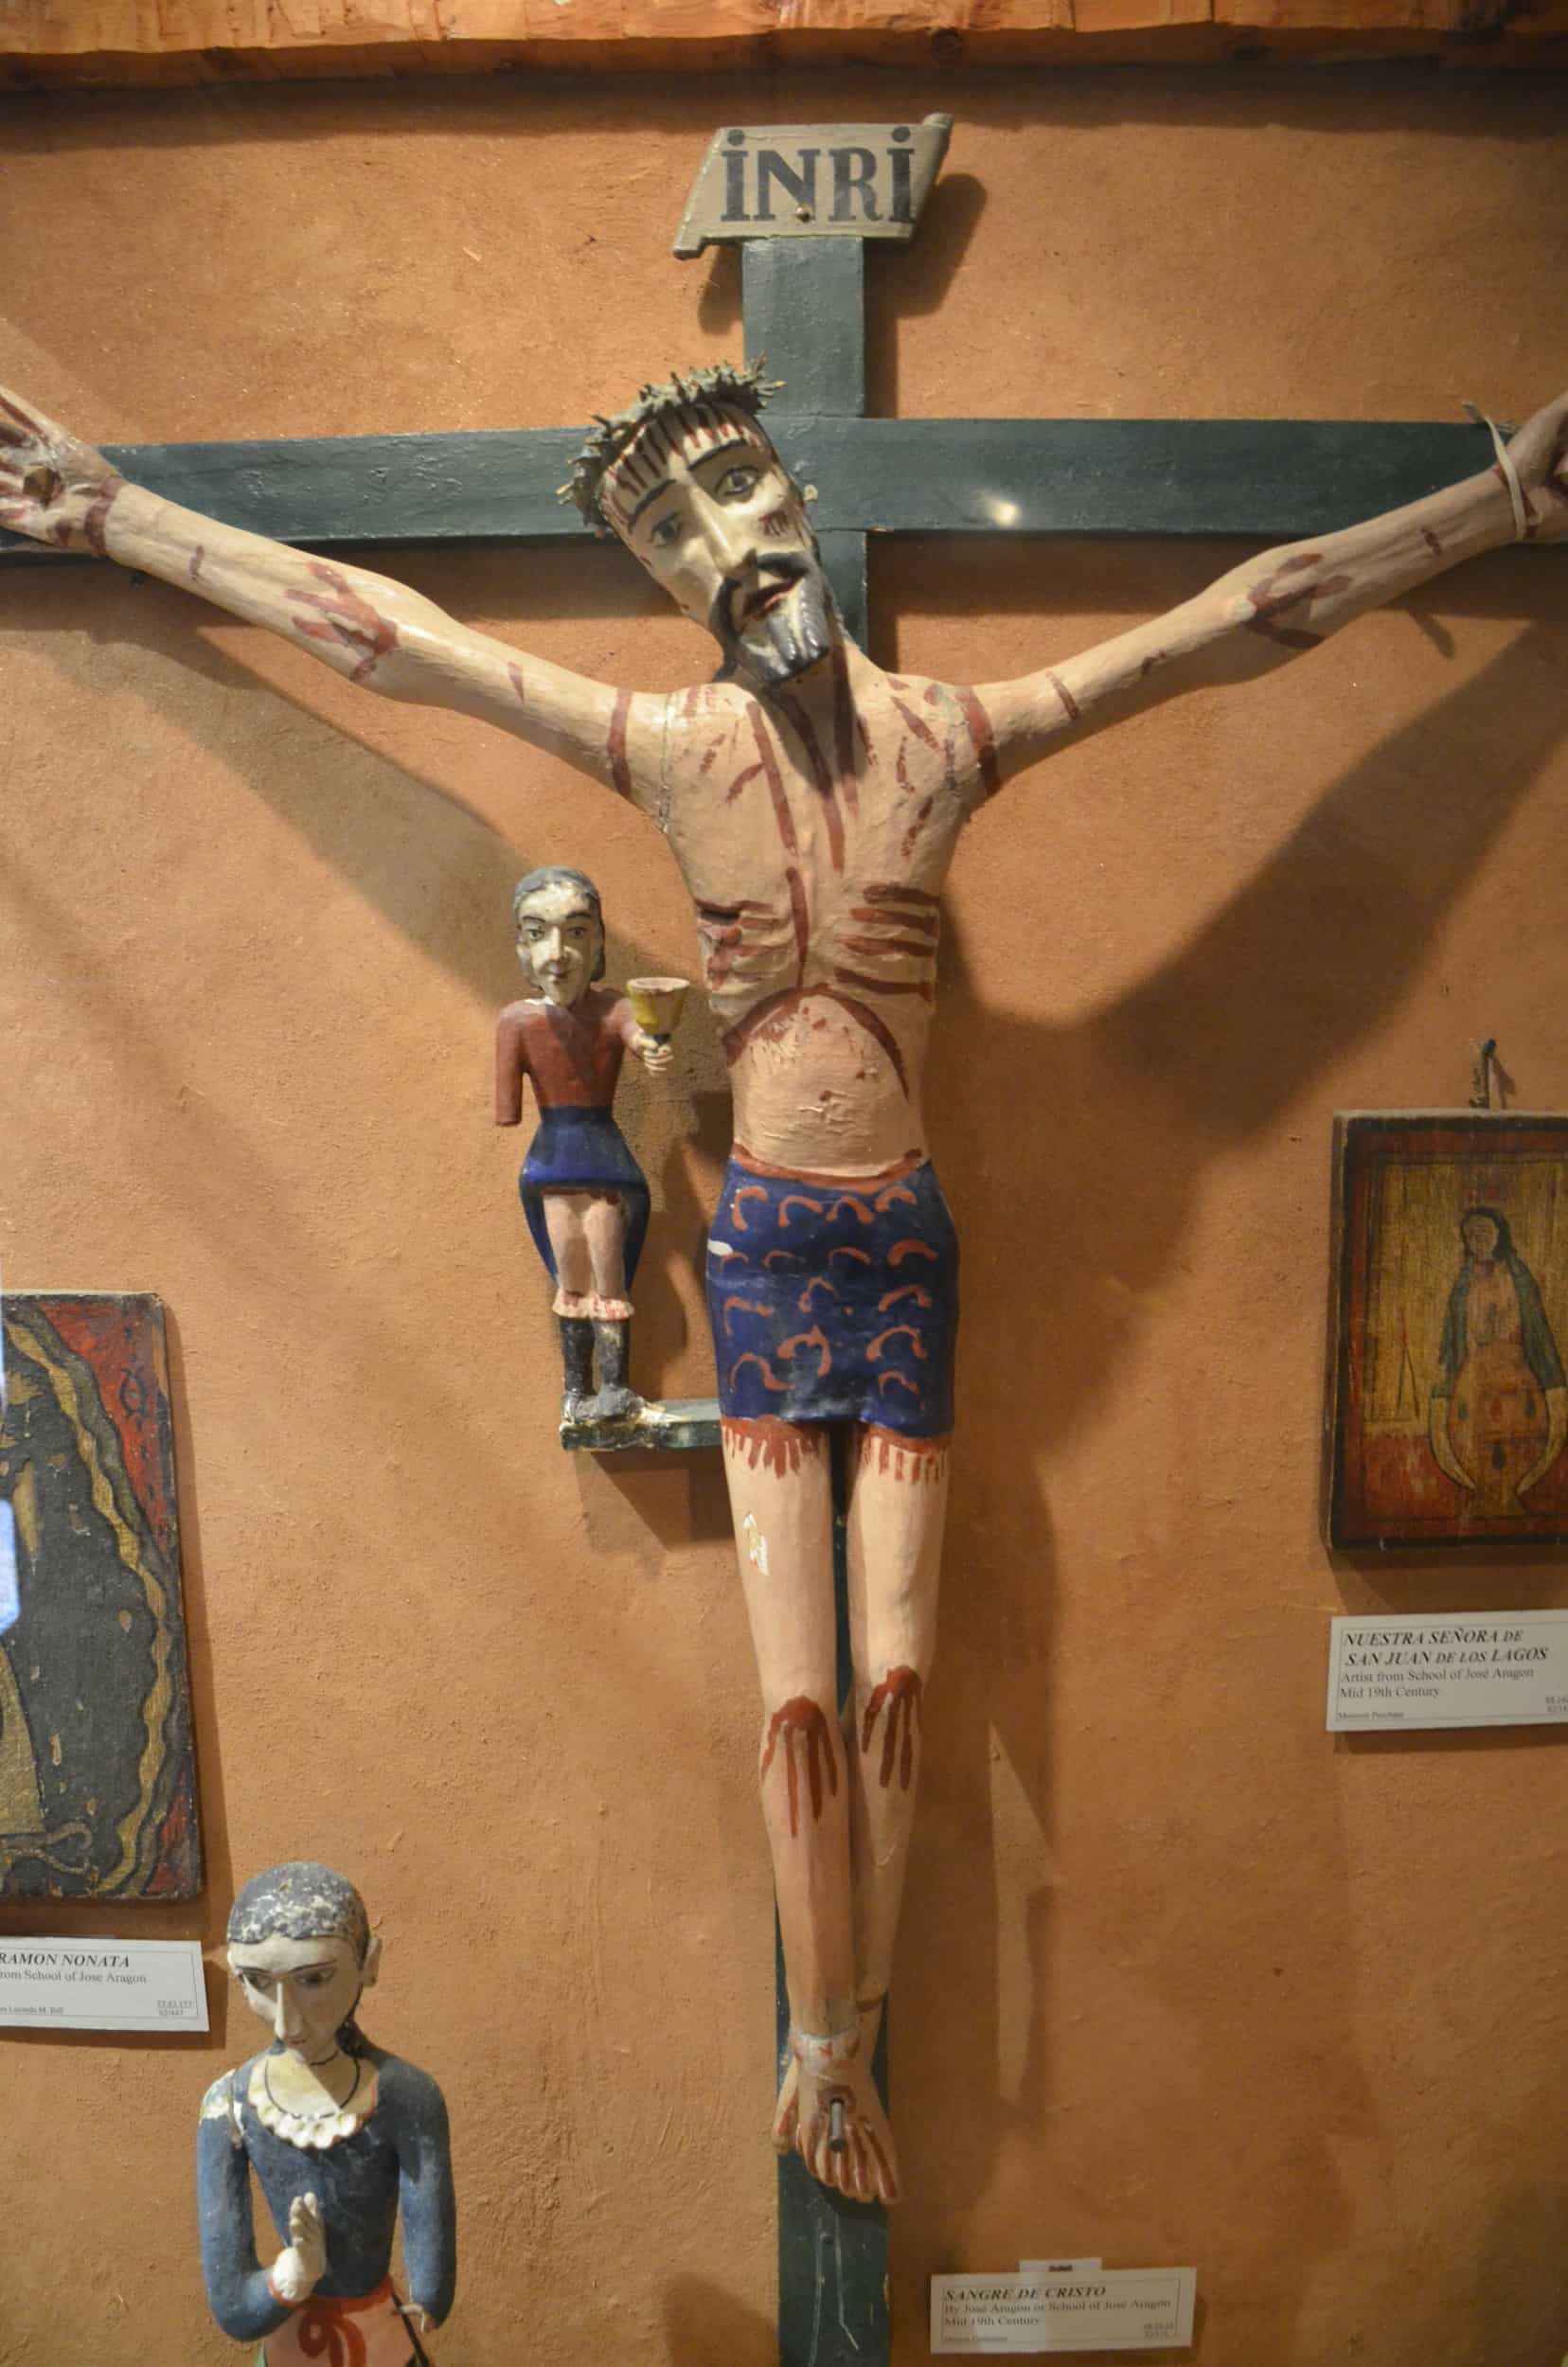 Sangre de Cristo (mid 19th century) at the Martinez Hacienda in Taos, New Mexico